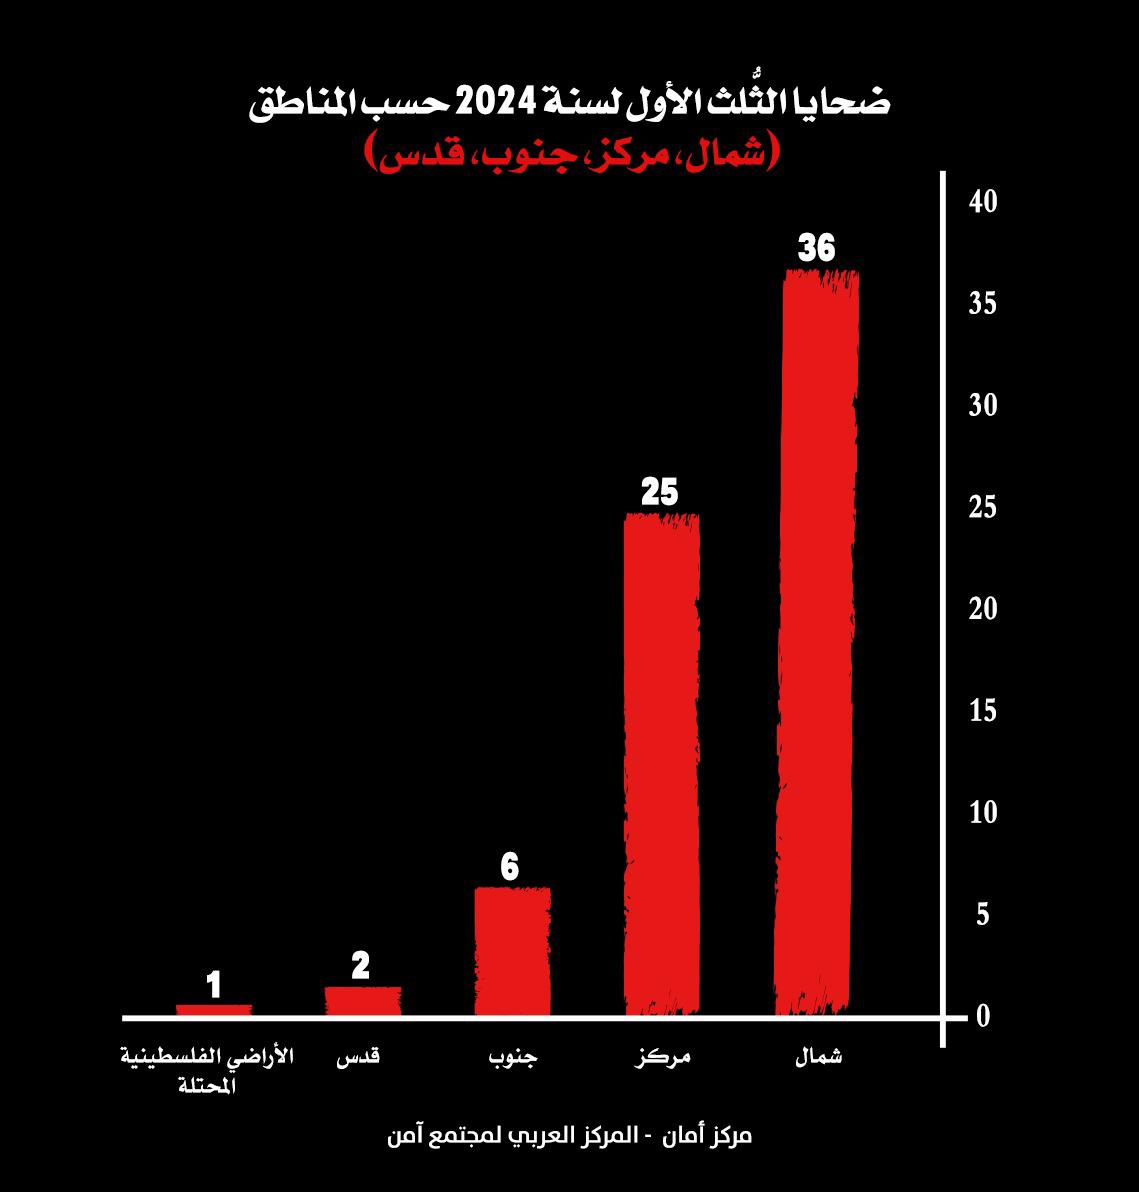 الثلث الأول لعام 2024 هو الأعلى في أعداد ضحايا الجريمة في المجتمع العربي